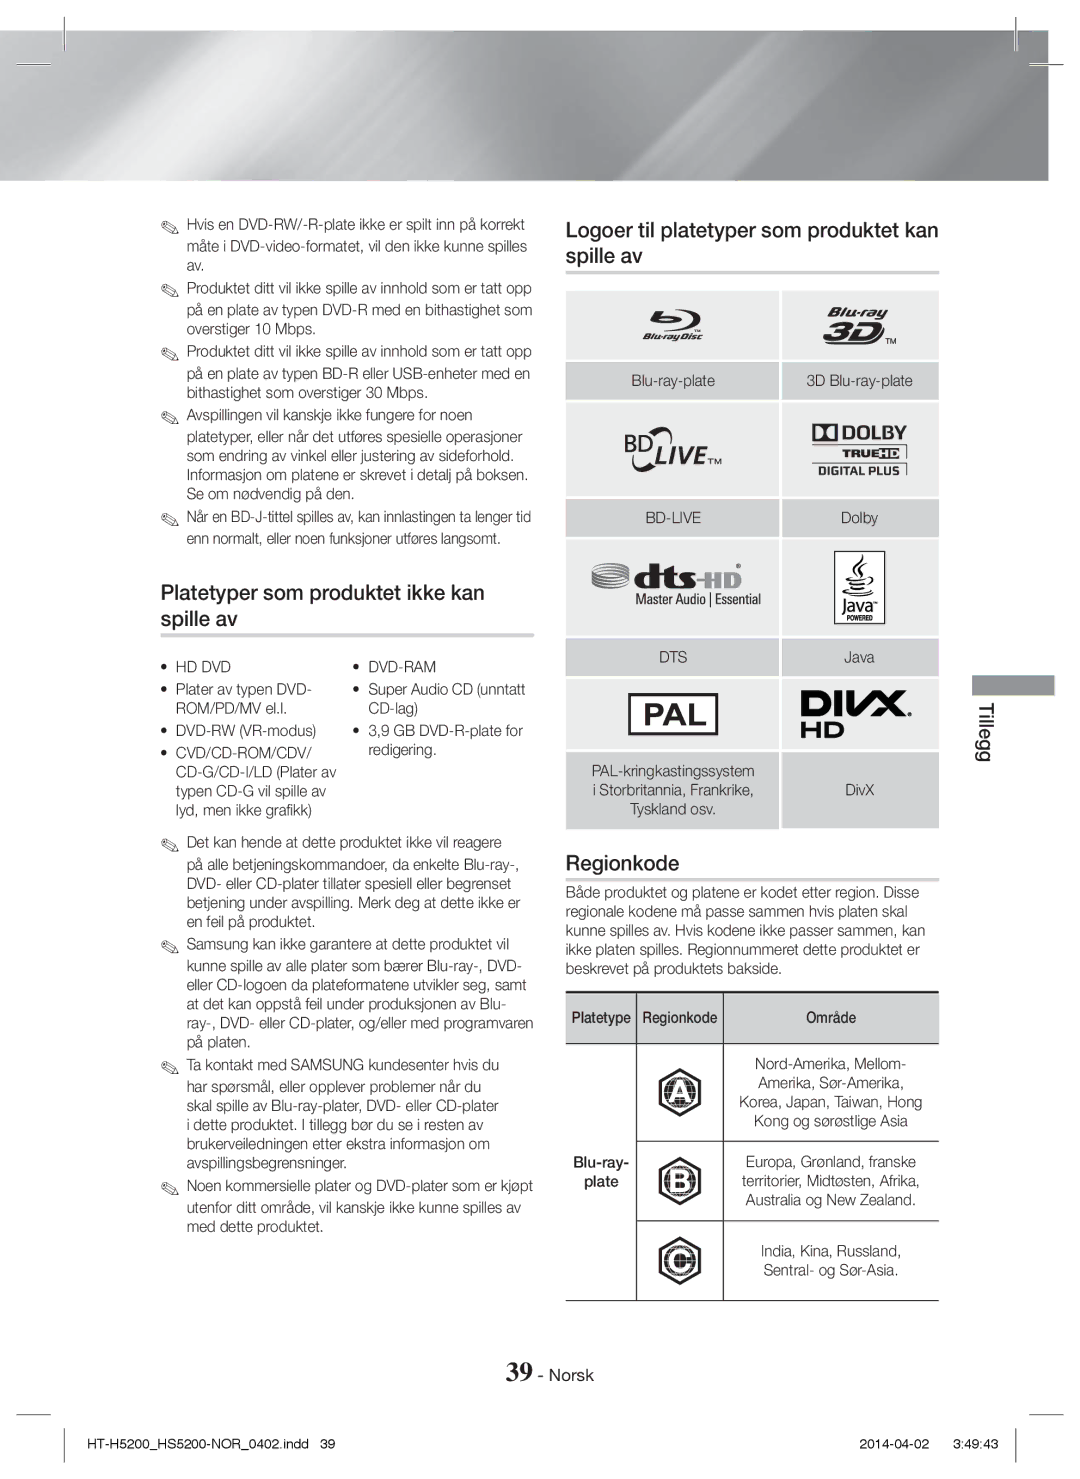 Samsung HT-H5200/XE manual Platetyper som produktet ikke kan spille av, Logoer til platetyper som produktet kan spille av 